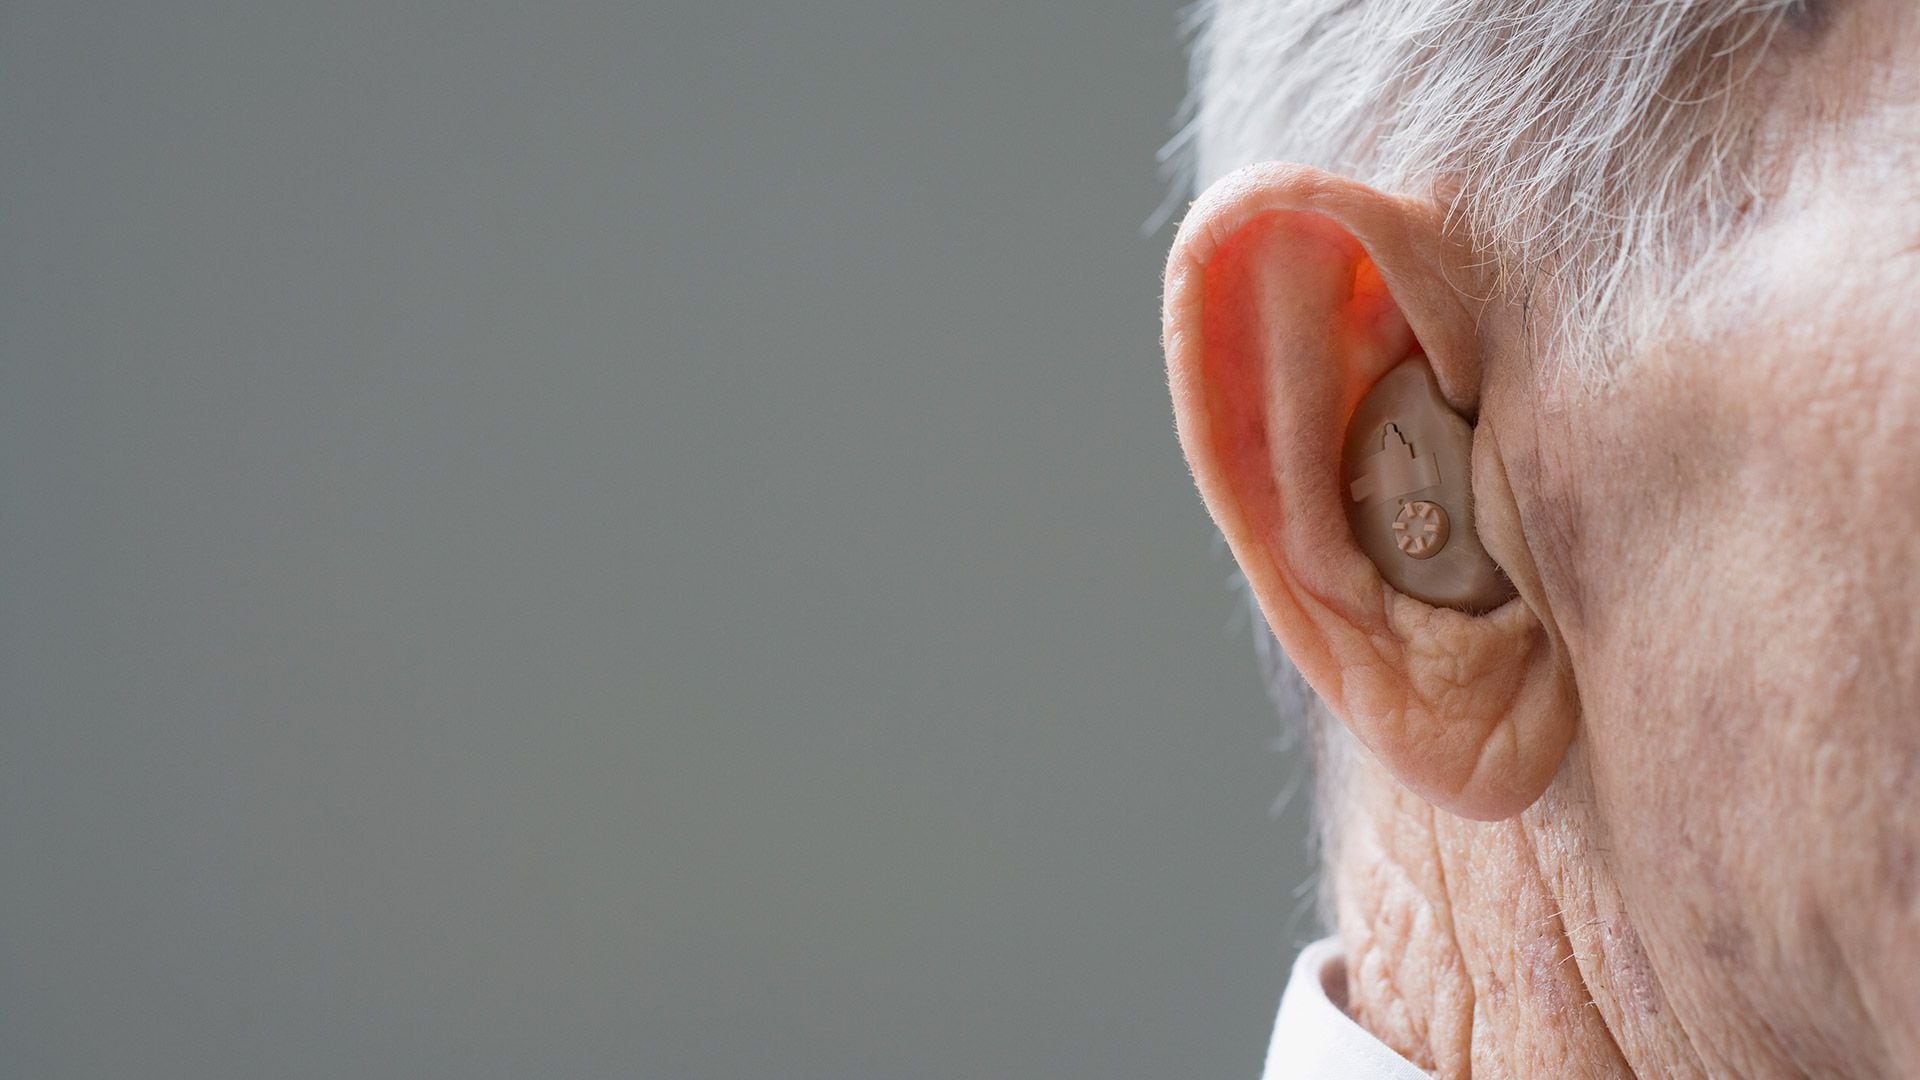 La pérdida de audición relacionada con la edad casi duplica el riesgo de demencia, mostró un informe reciente. Por eso el audífono tiene función preventiva